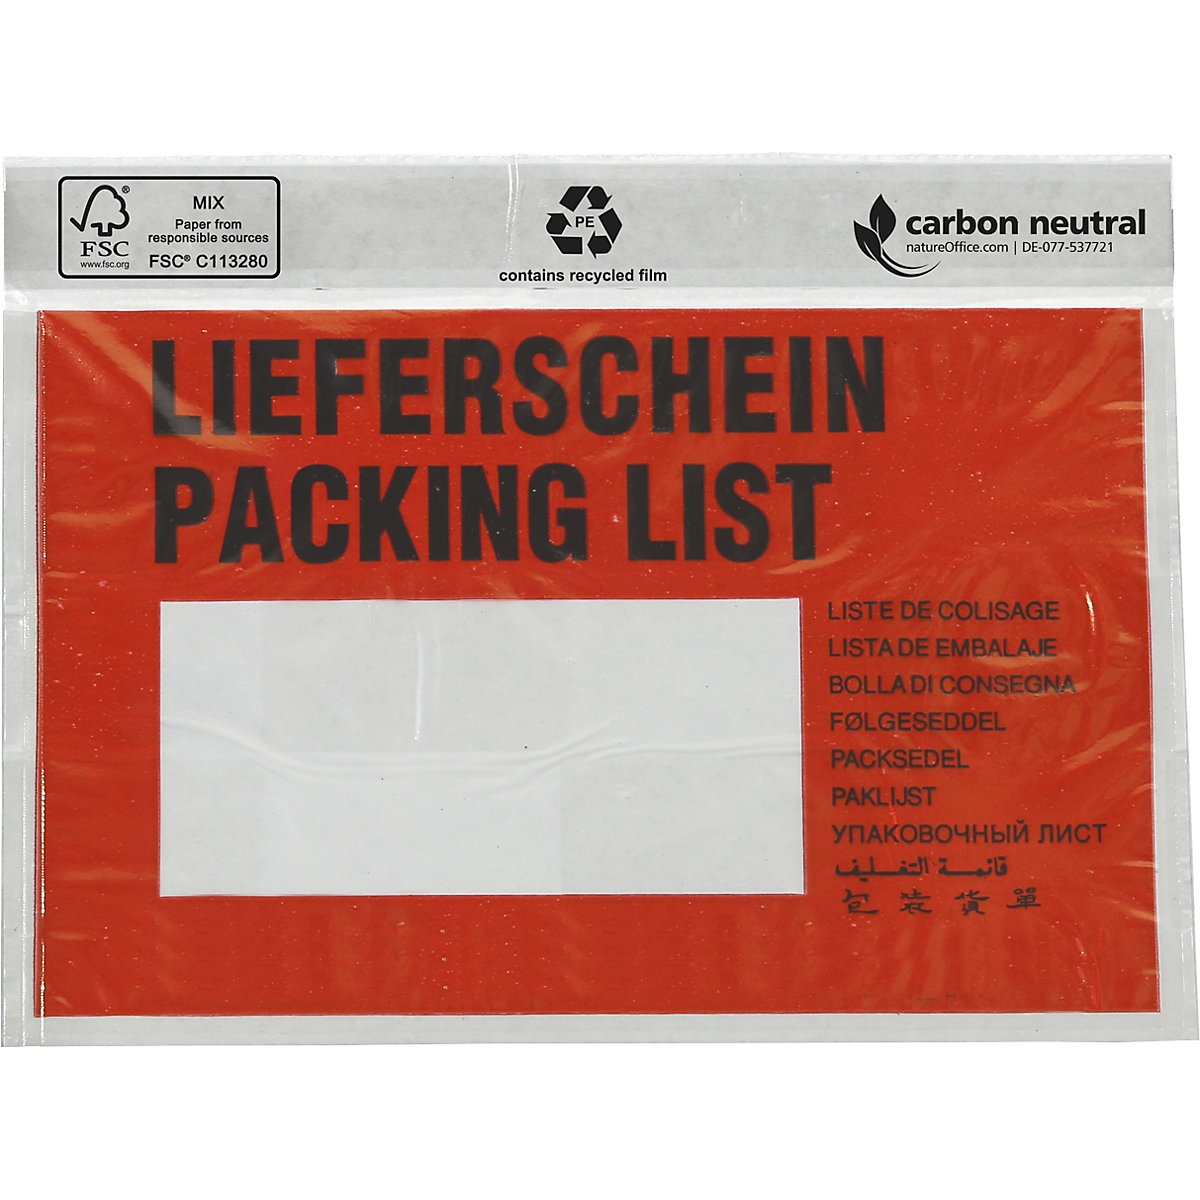 Kapsa na dokumenty, s certifikátem FSC®, bal.j. 250 ks, pro DIN C6, s potiskem „Lieferschein''-4